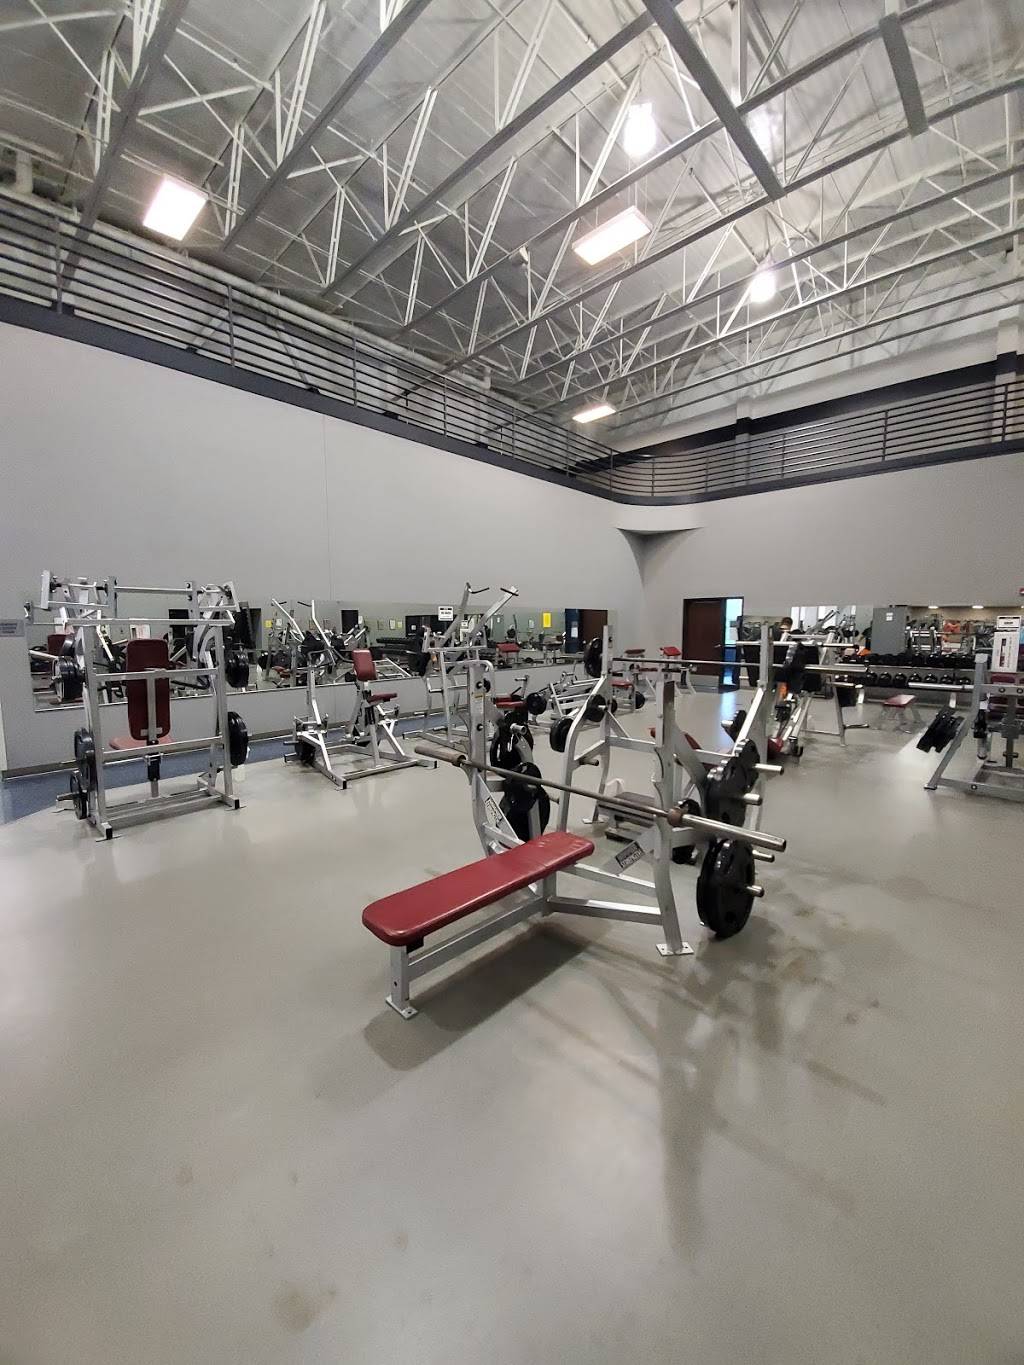 Textron Aviation Employees Club Fitness Center - gym  | Photo 3 of 3 | Address: 6711 W 31st St S, Wichita, KS 67215, USA | Phone: (316) 517-2800